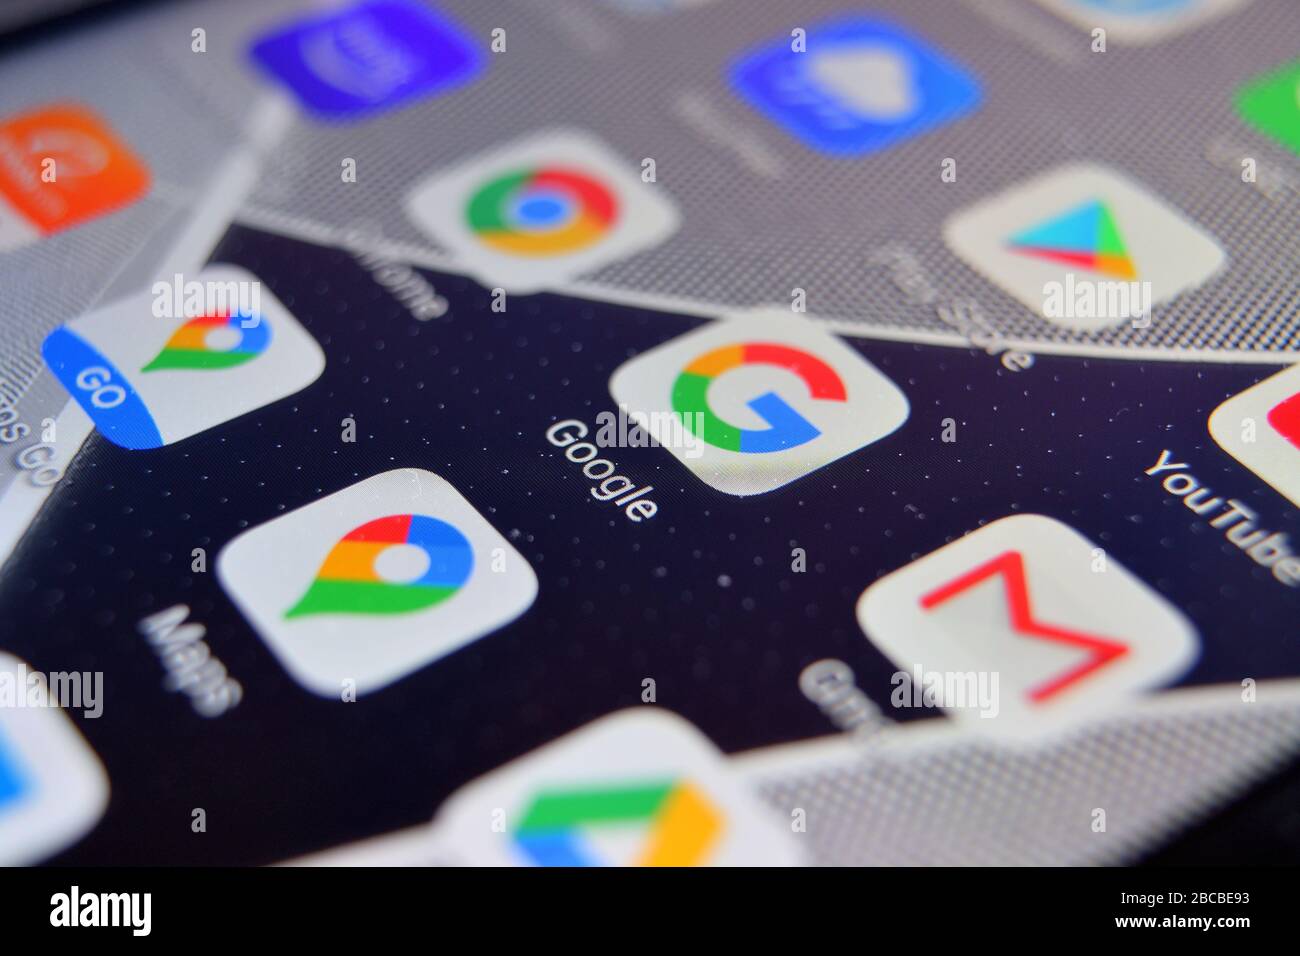 Valverde (CT), Italie - 02 avril 2020: Vue rapprochée de l'application Google Browser sur un smartphone Android, y compris d'autres icônes. Banque D'Images